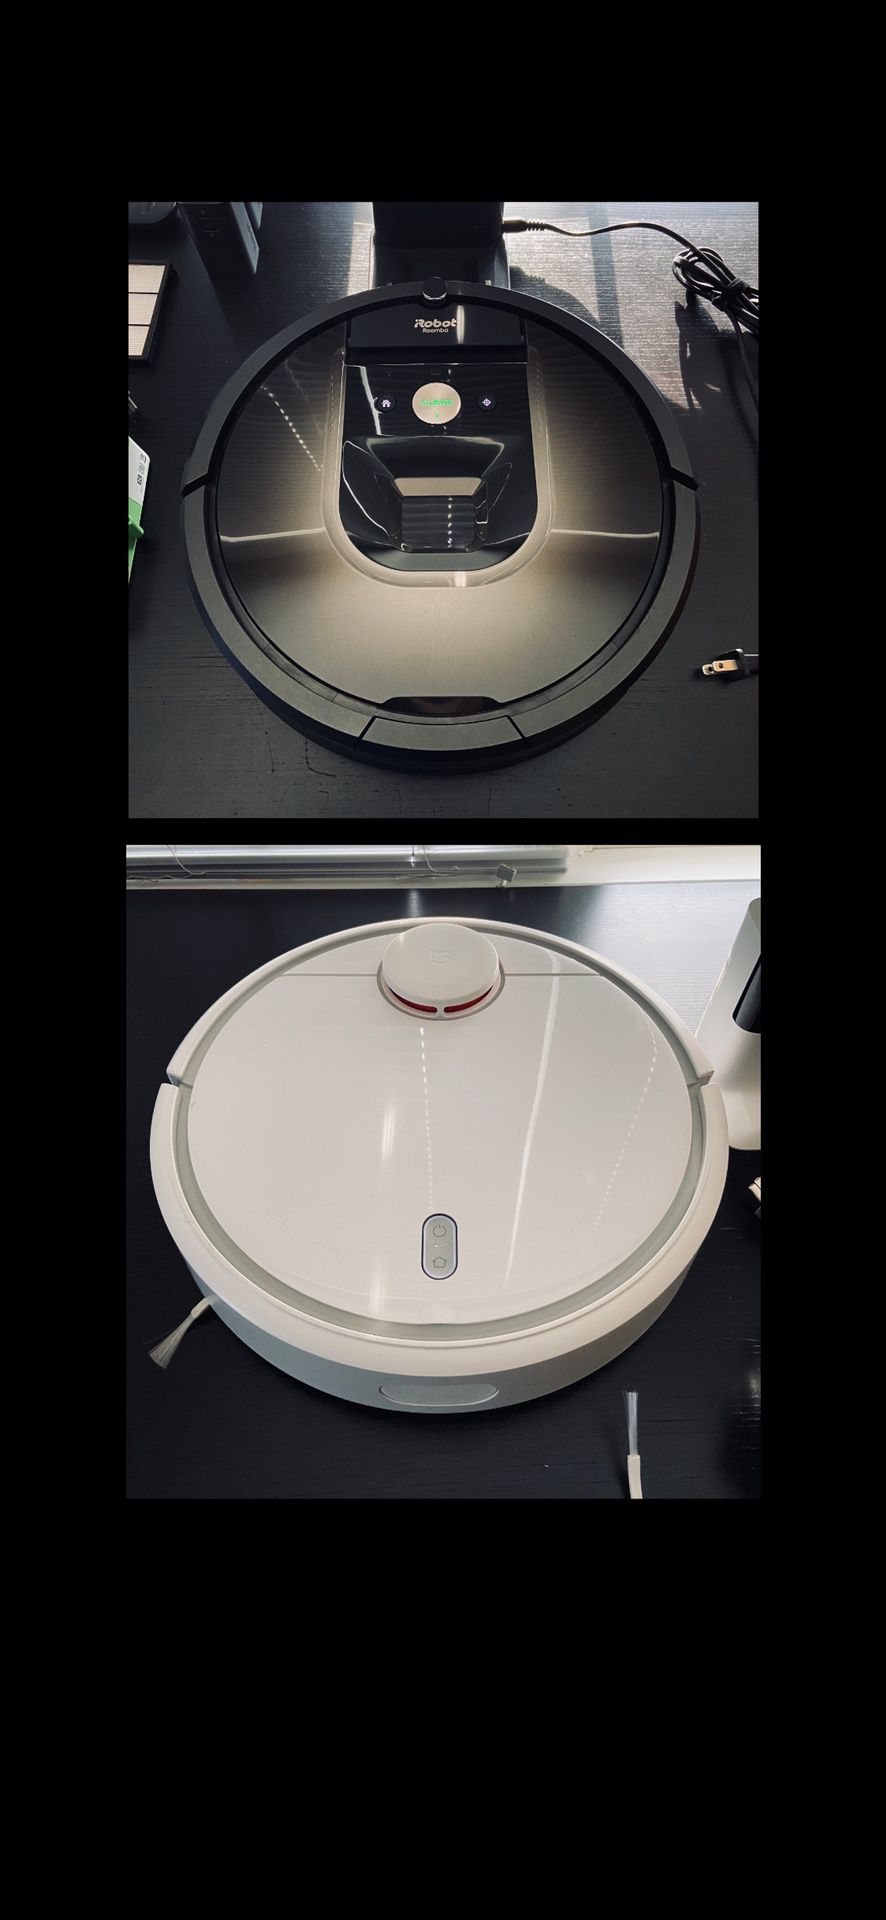 Robot Vacuums: Roomba 980 and Xiaomi Roborock